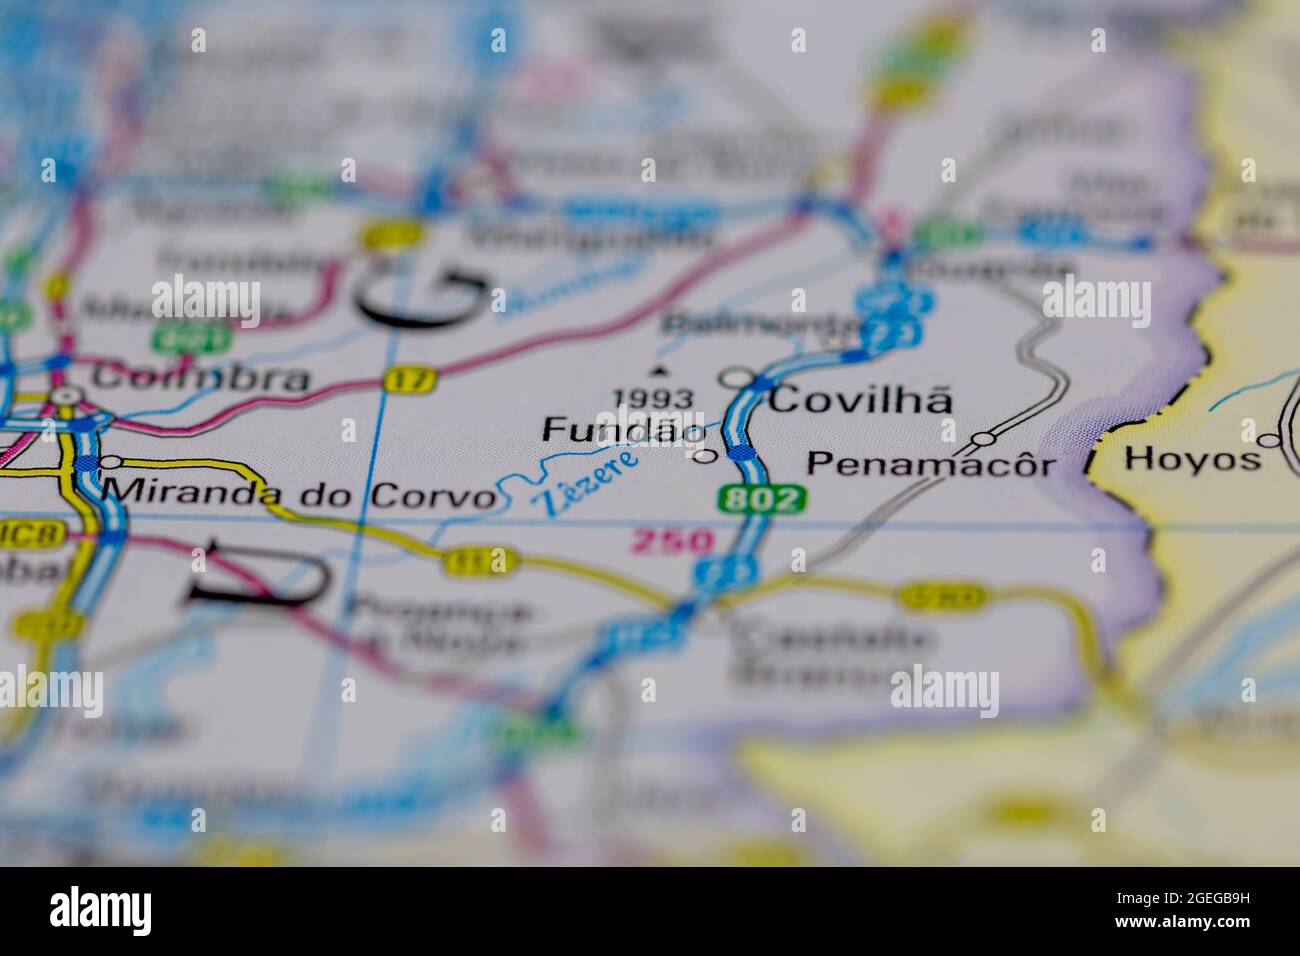 Fundao Portugal aparece en un mapa de carreteras o mapa geográfico Foto de stock